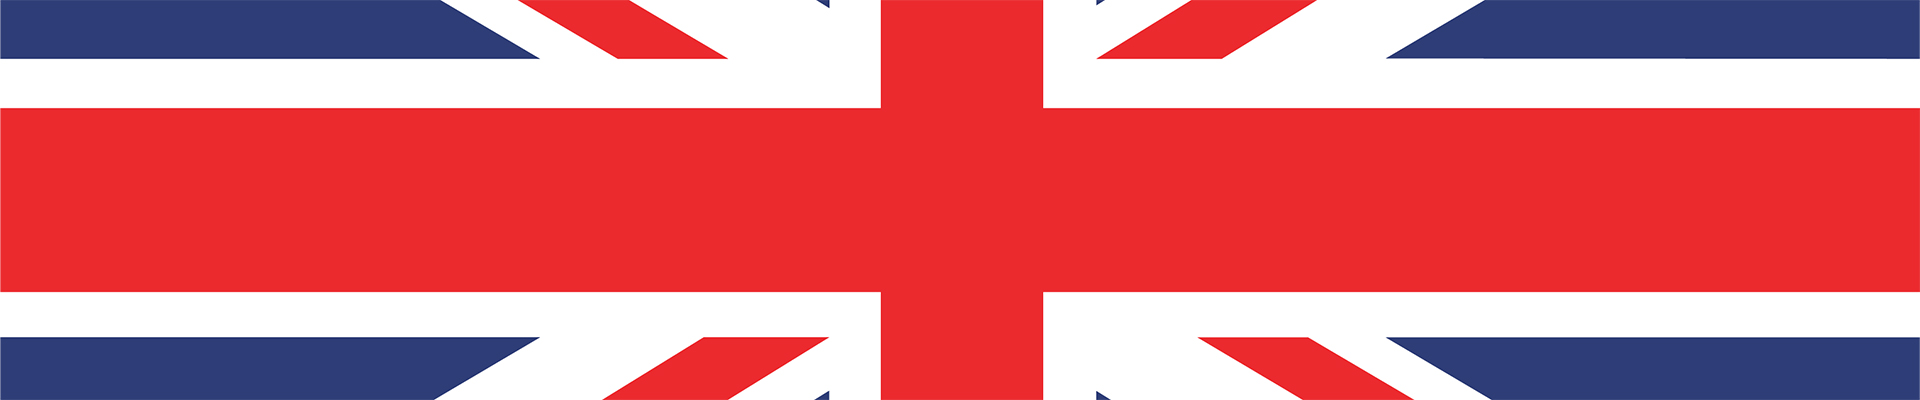 Ruud vs Zverev en direct – drapeau britannique